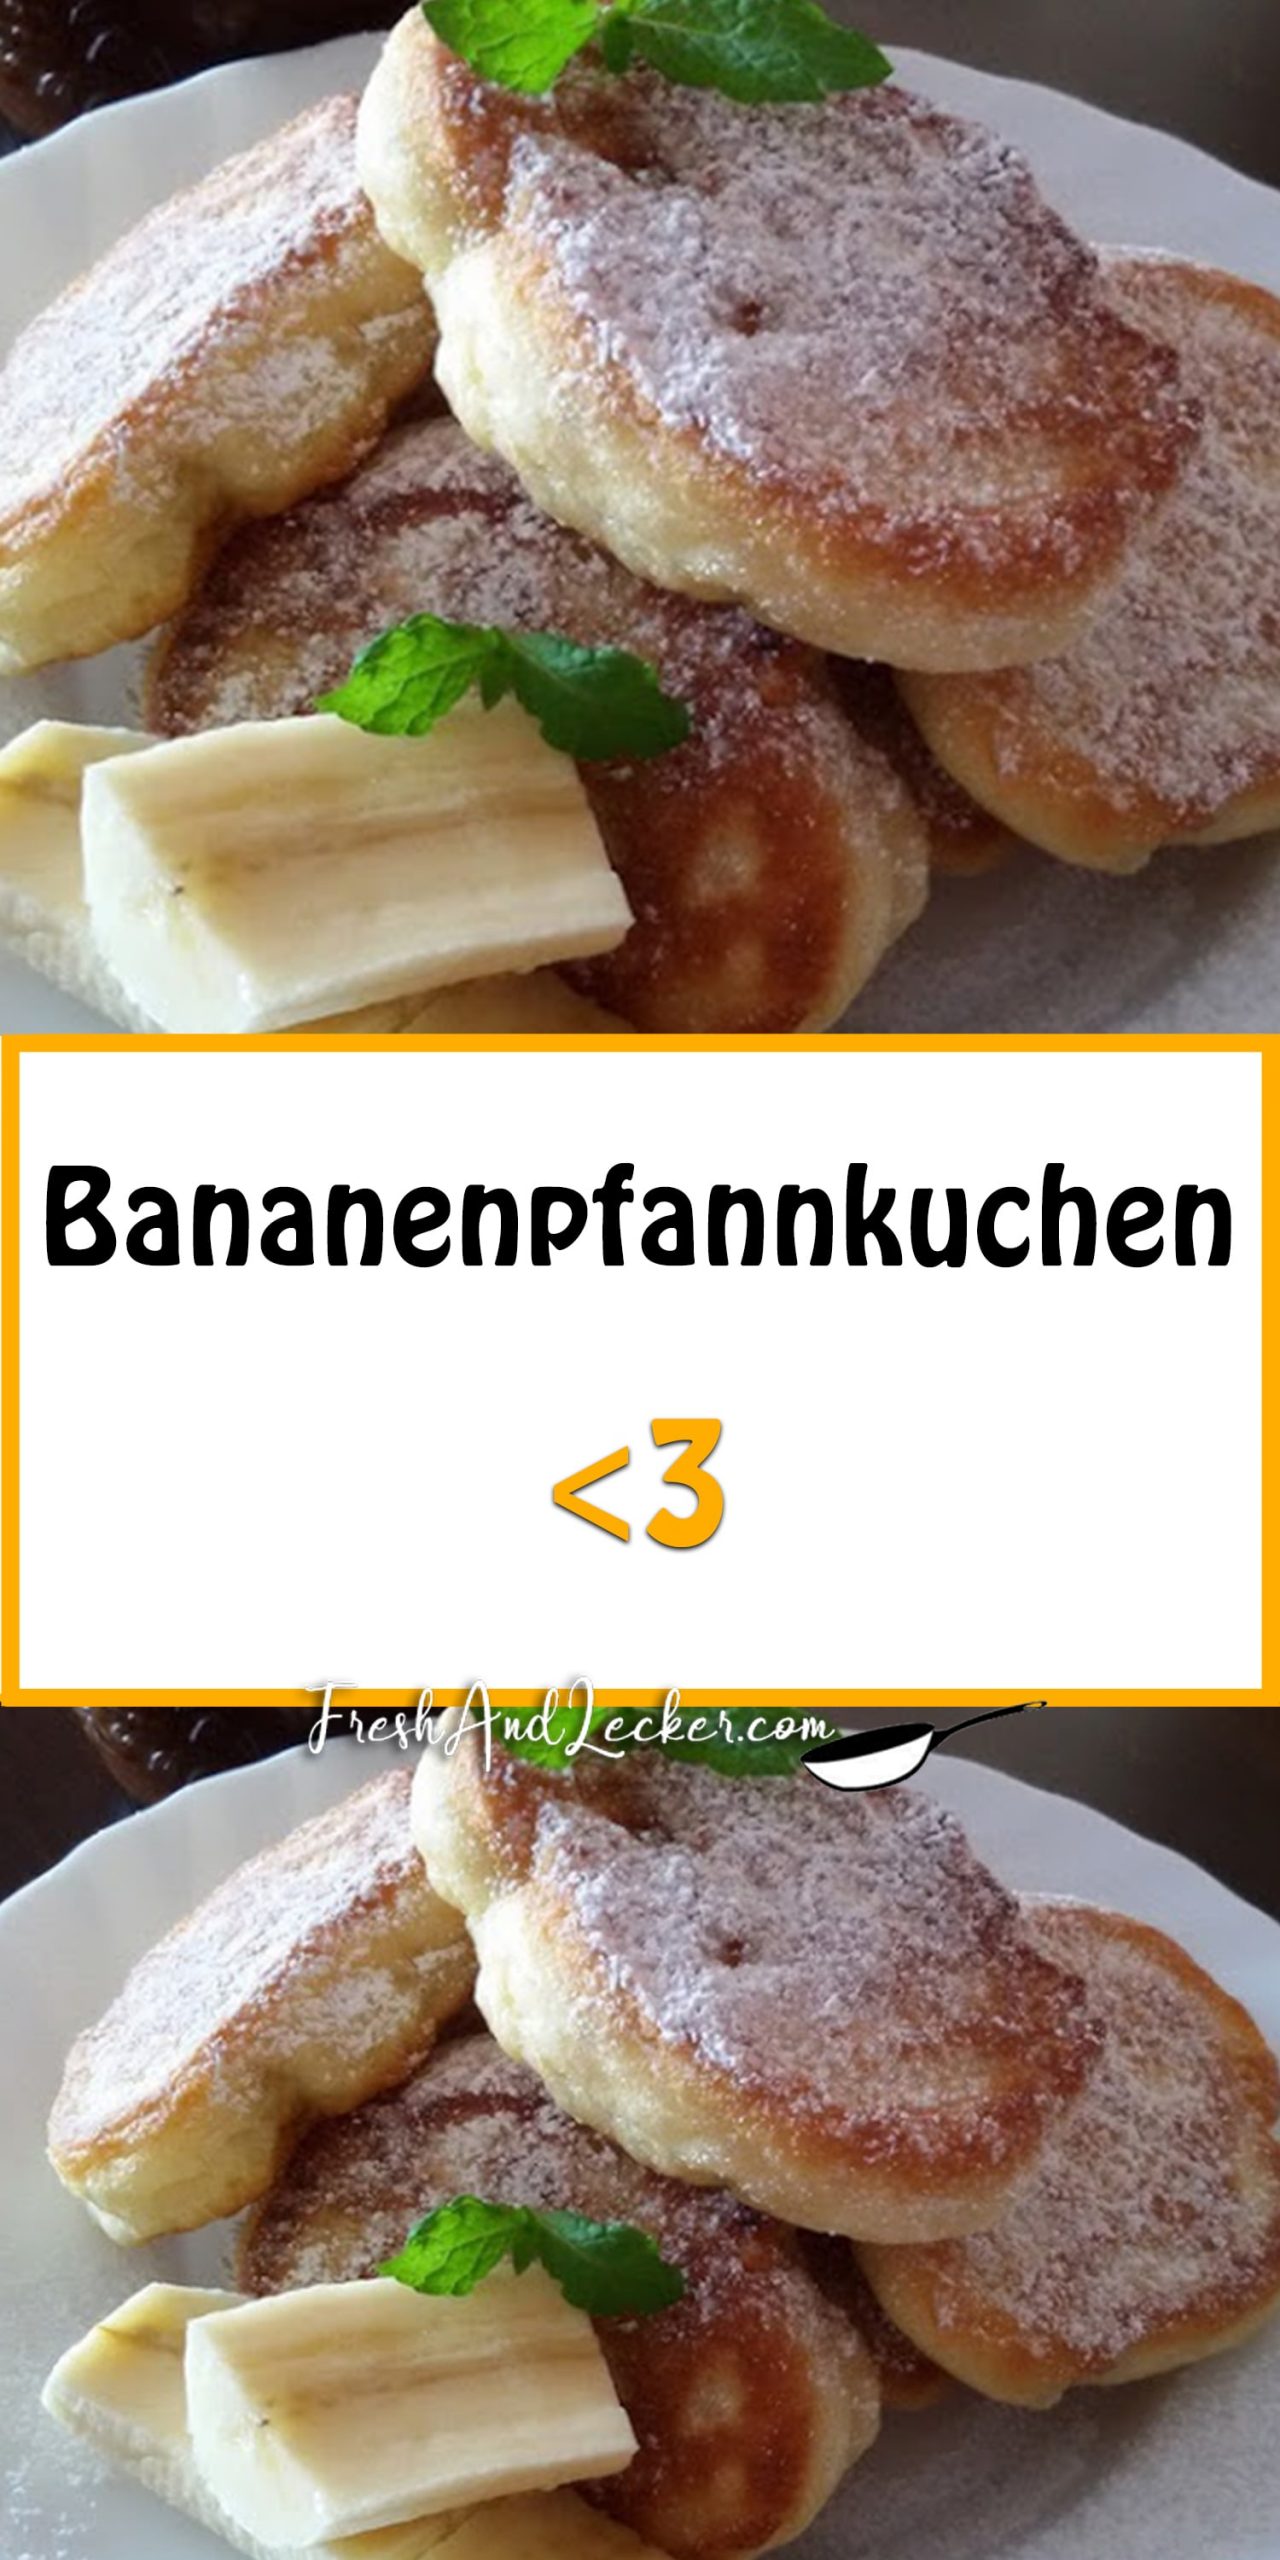 Bananenpfannkuchen - Fresh Lecker